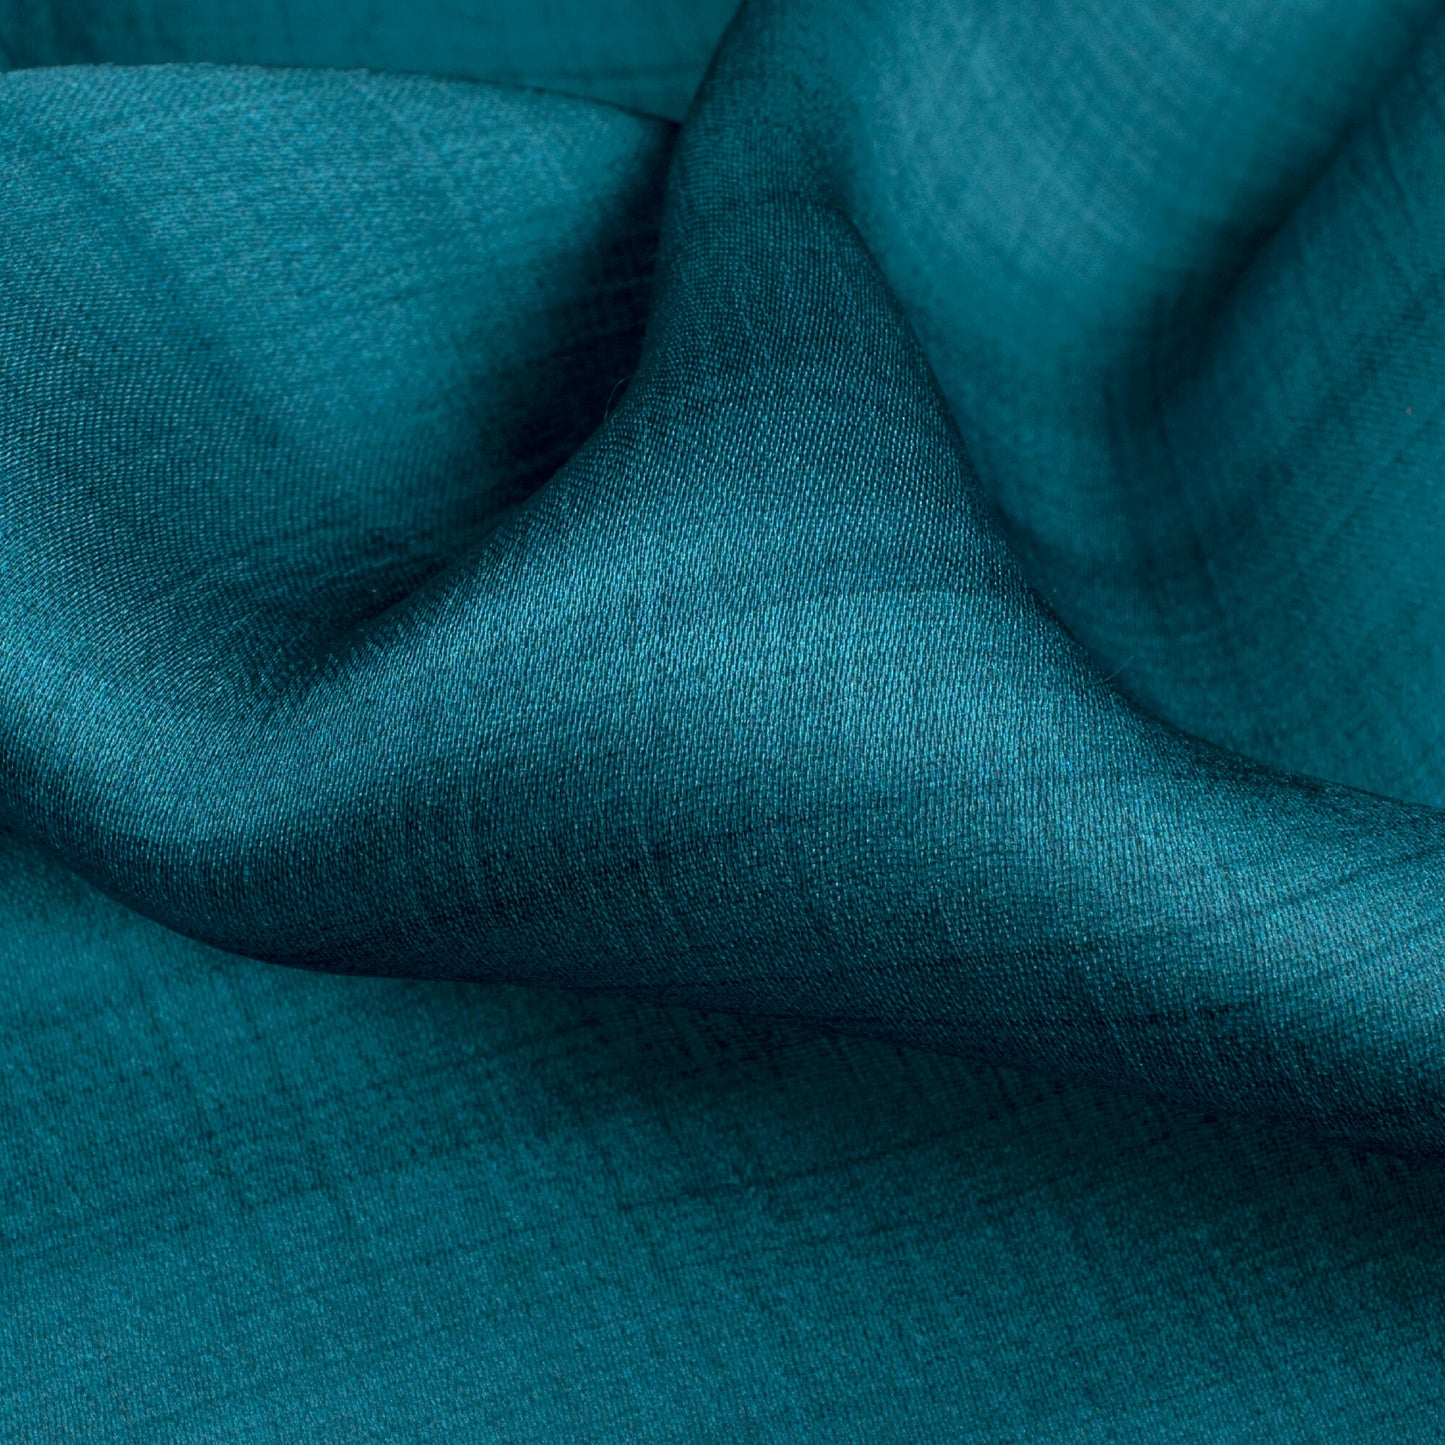 Lagoon Blue Texture Pattern Digital Print Chiffon Satin Fabric